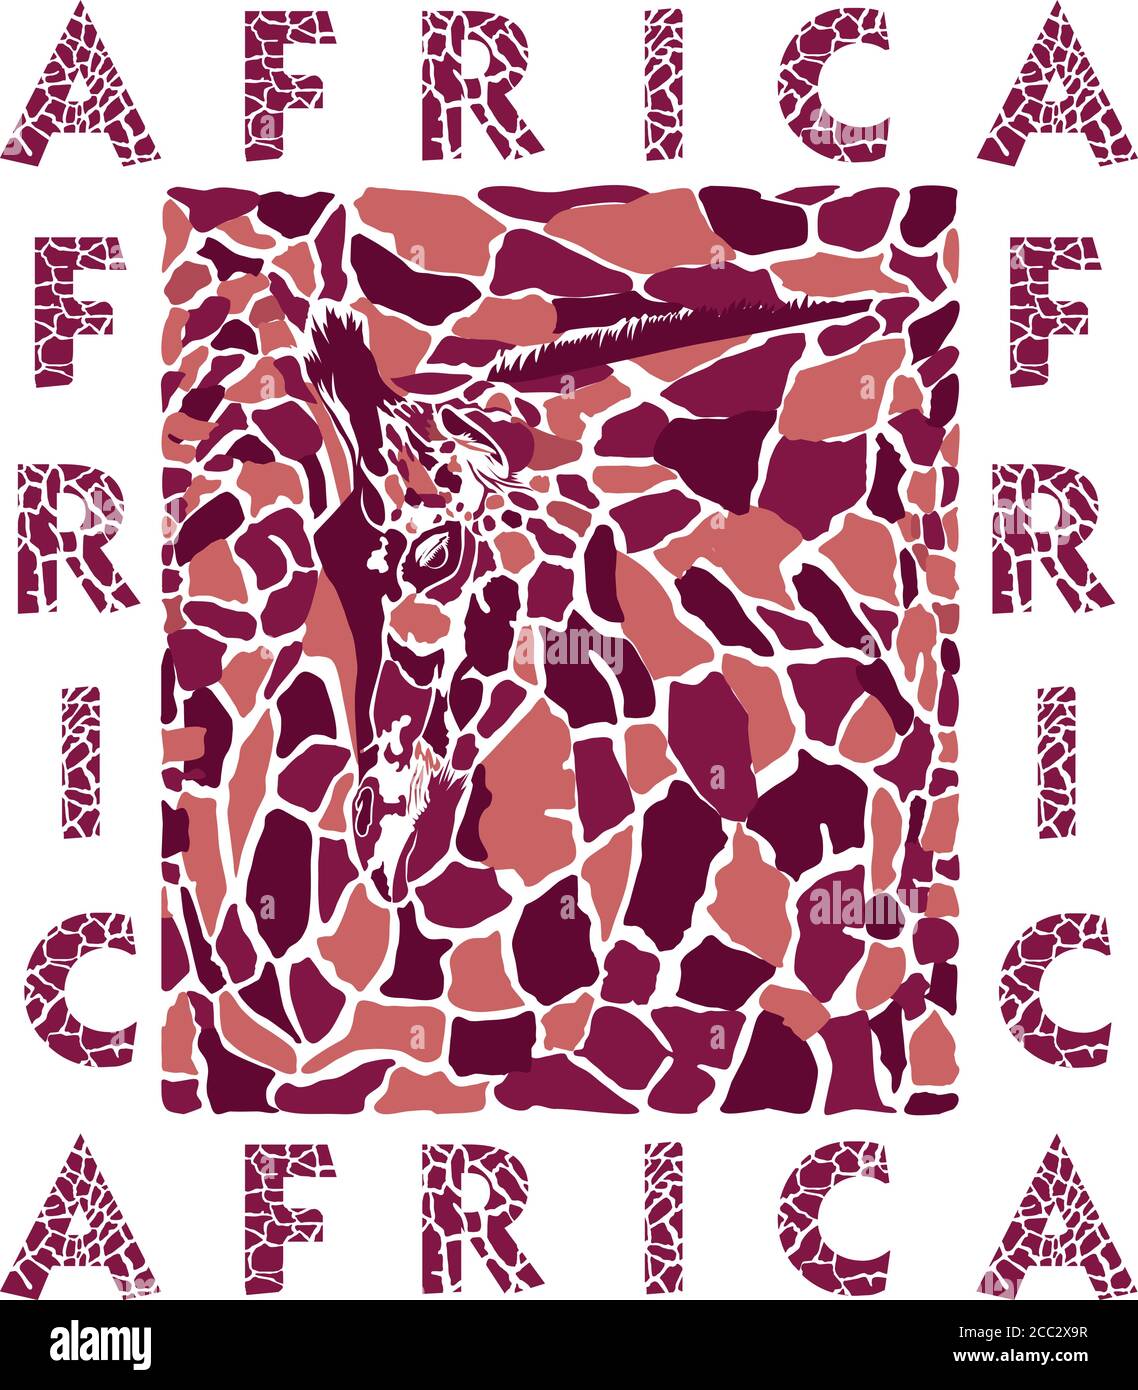 Stilisierte Textur von Giraffenkopf, Haut und Text Stock Vektor